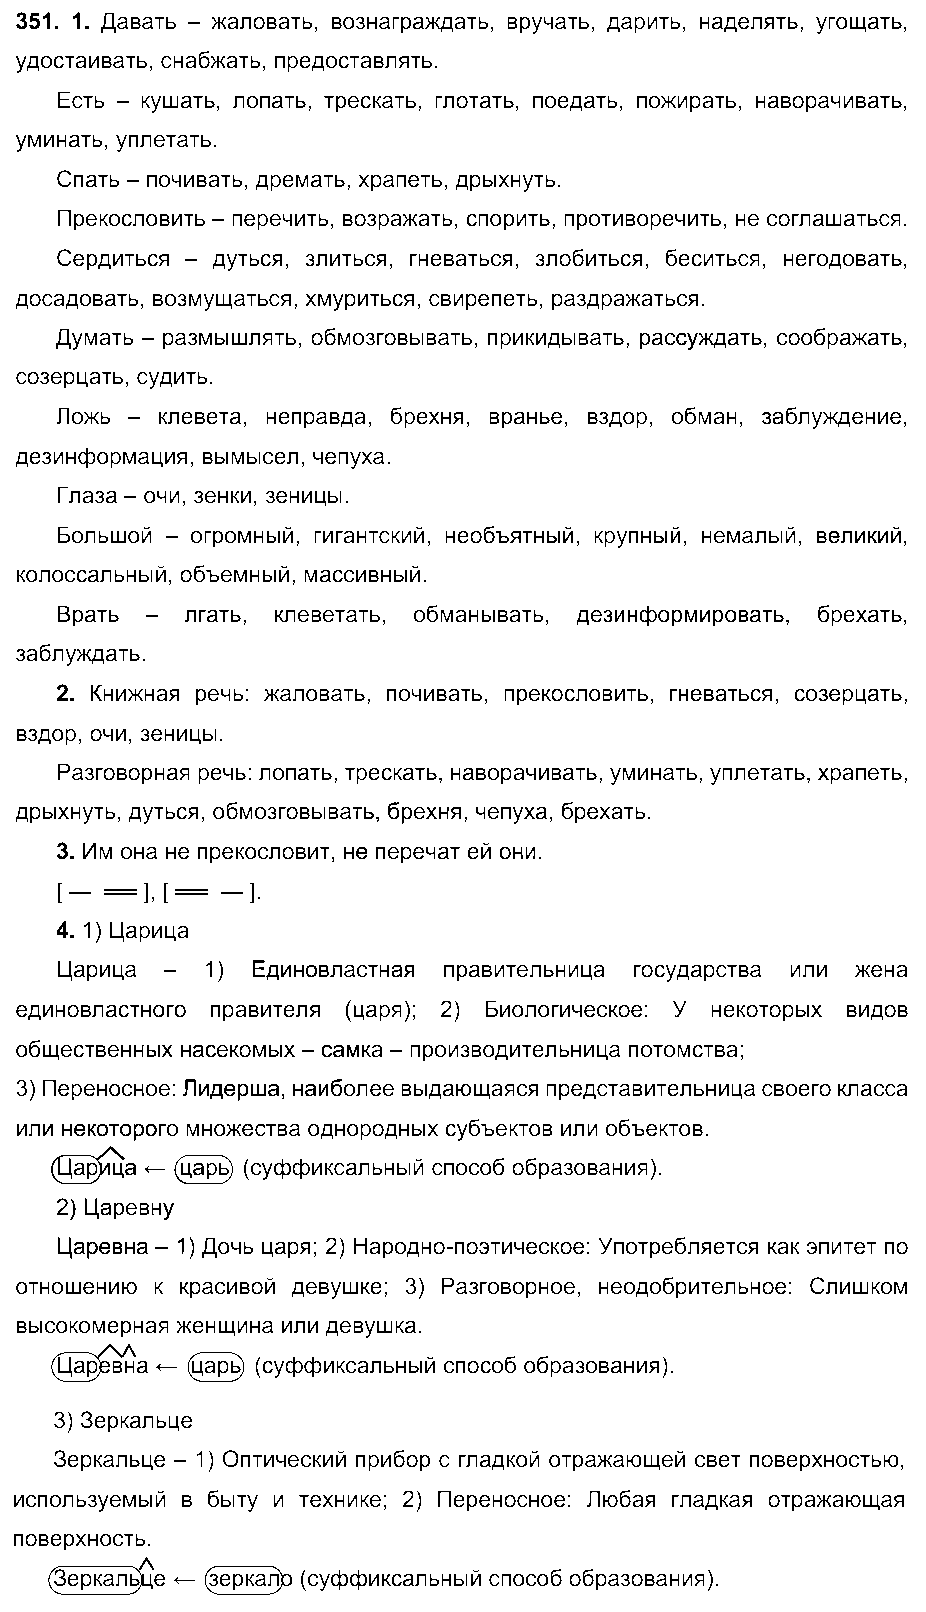 ГДЗ Русский язык 6 класс - 351